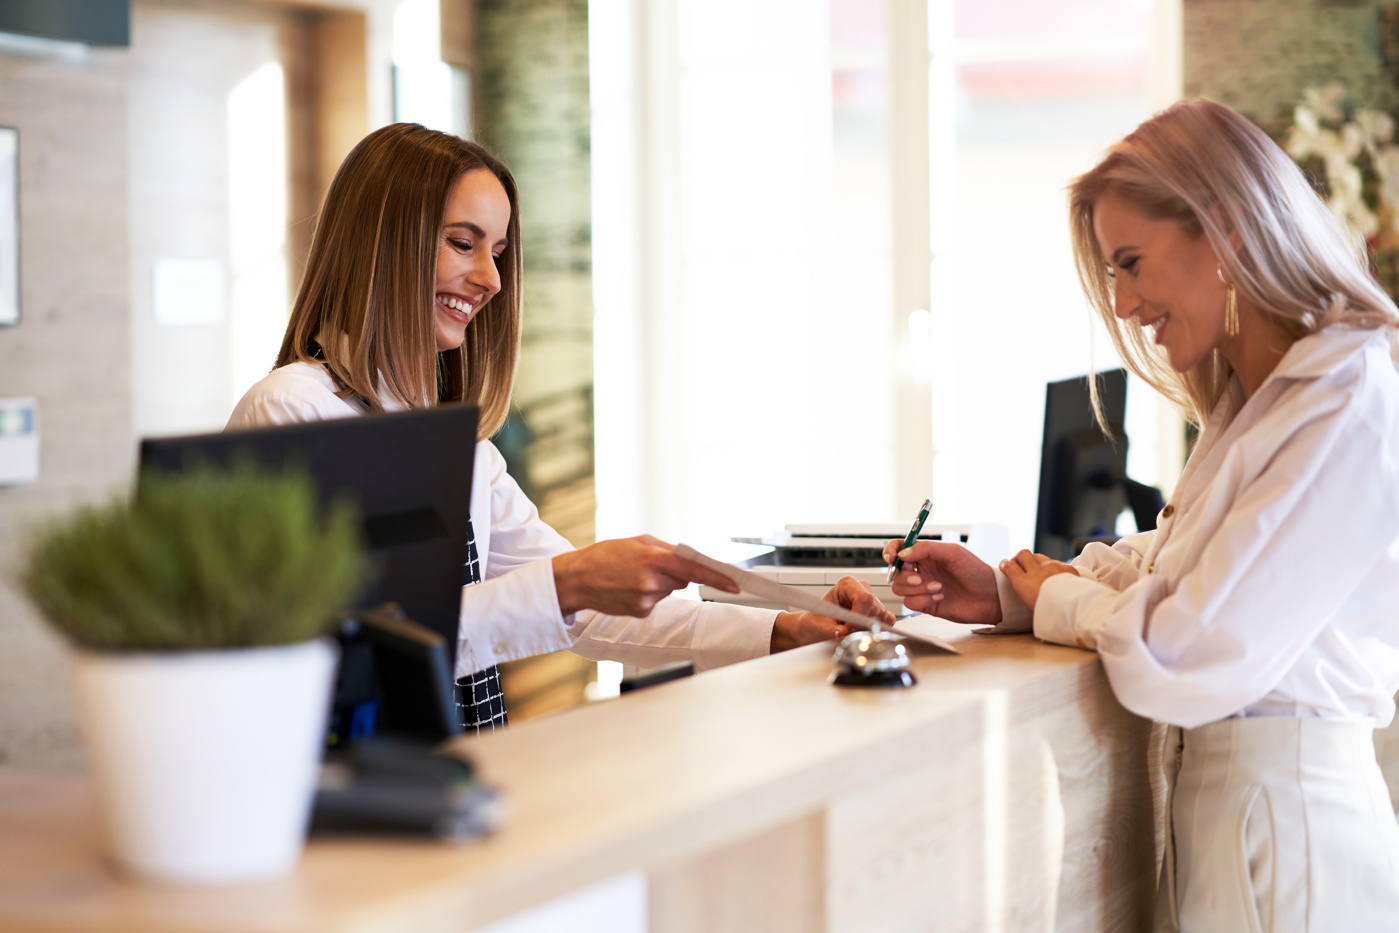 Une spécialiste en hôtellerie-restauration avec certificat fédéral de capacité conseille un client au front-desk d'un hôtel.